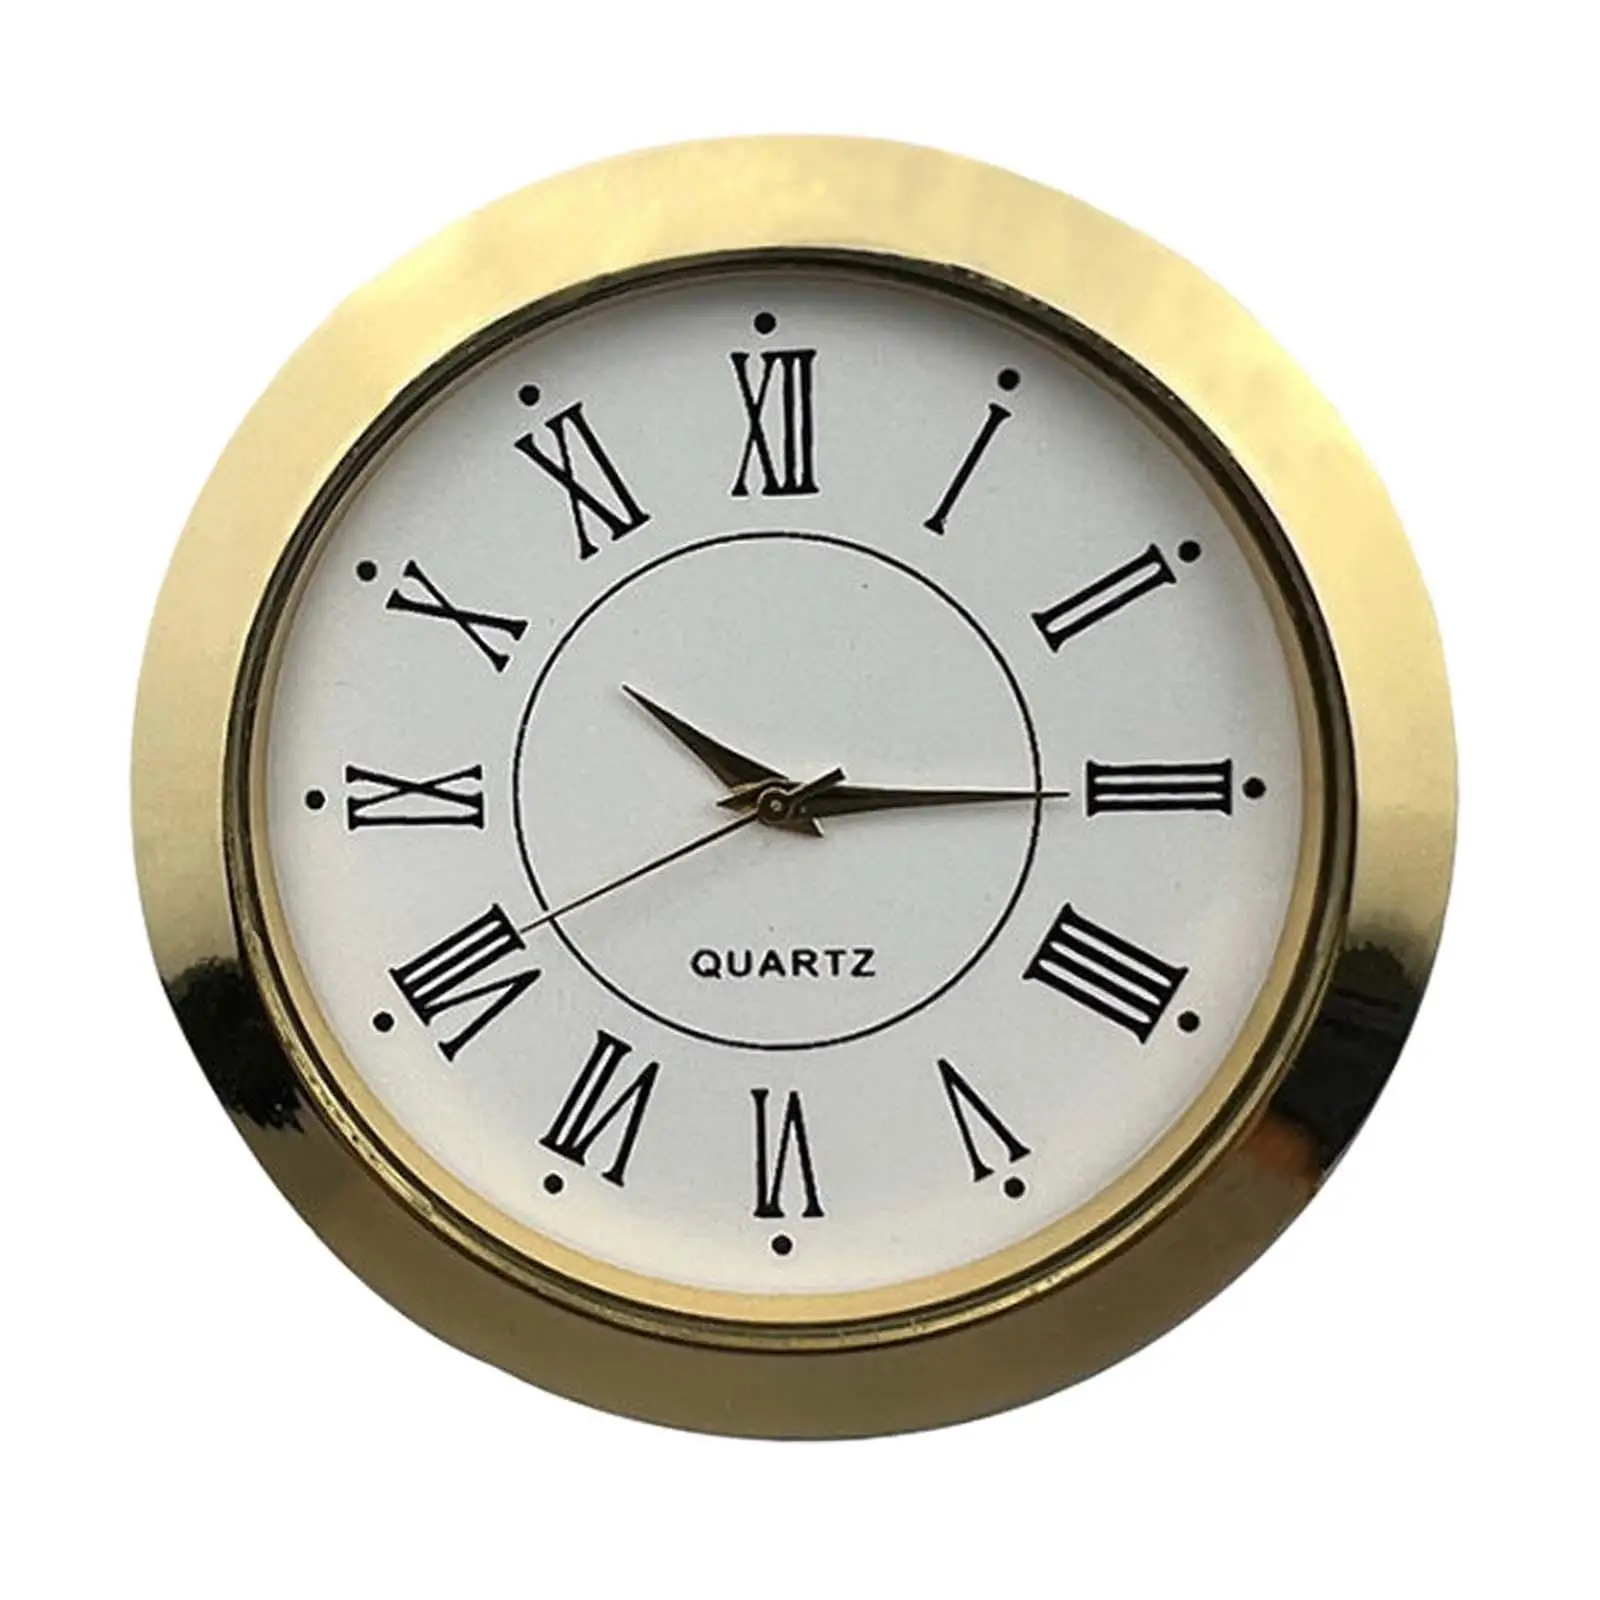 Металлические настенные часы, вставка из золота, часы с белым циферблатом и римскими цифрами, миниатюрные часы для самостоятельной установки, домашние часы, школьные часы